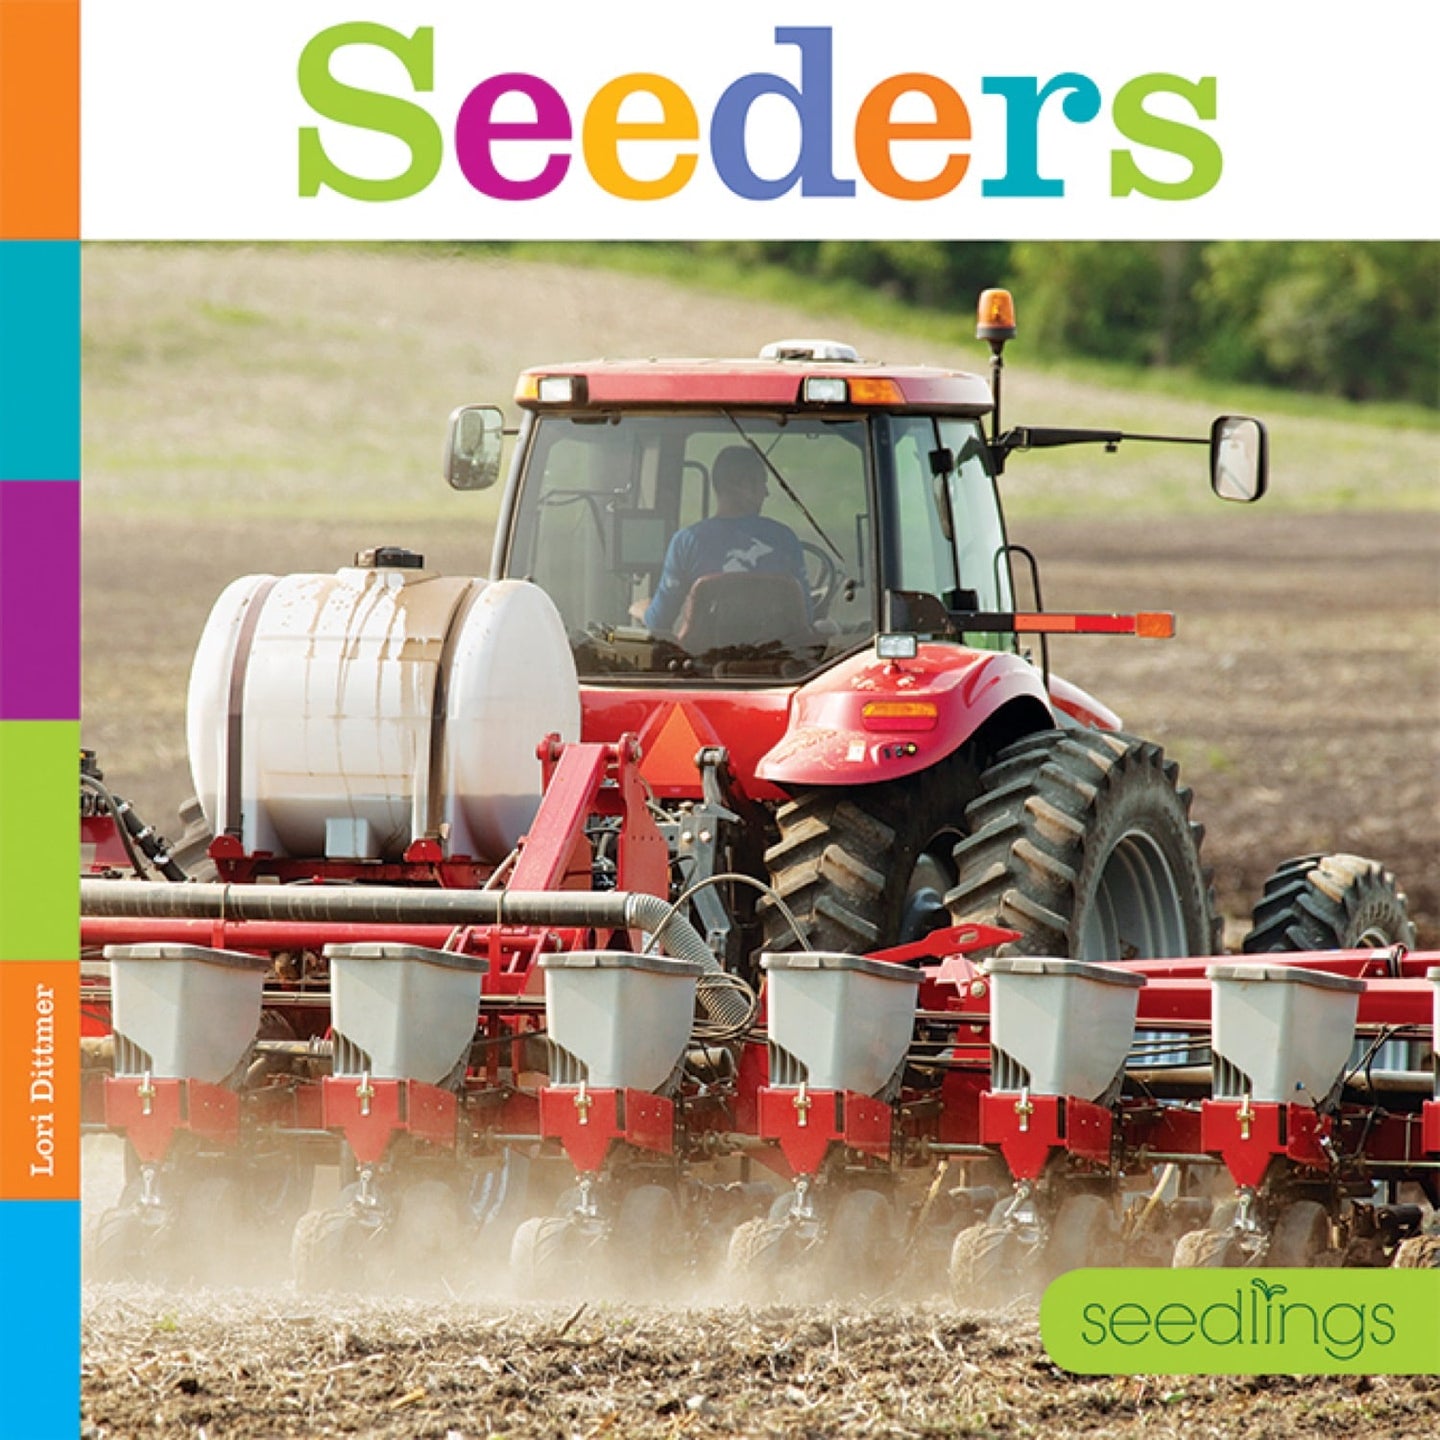 Seedlings: Seeders